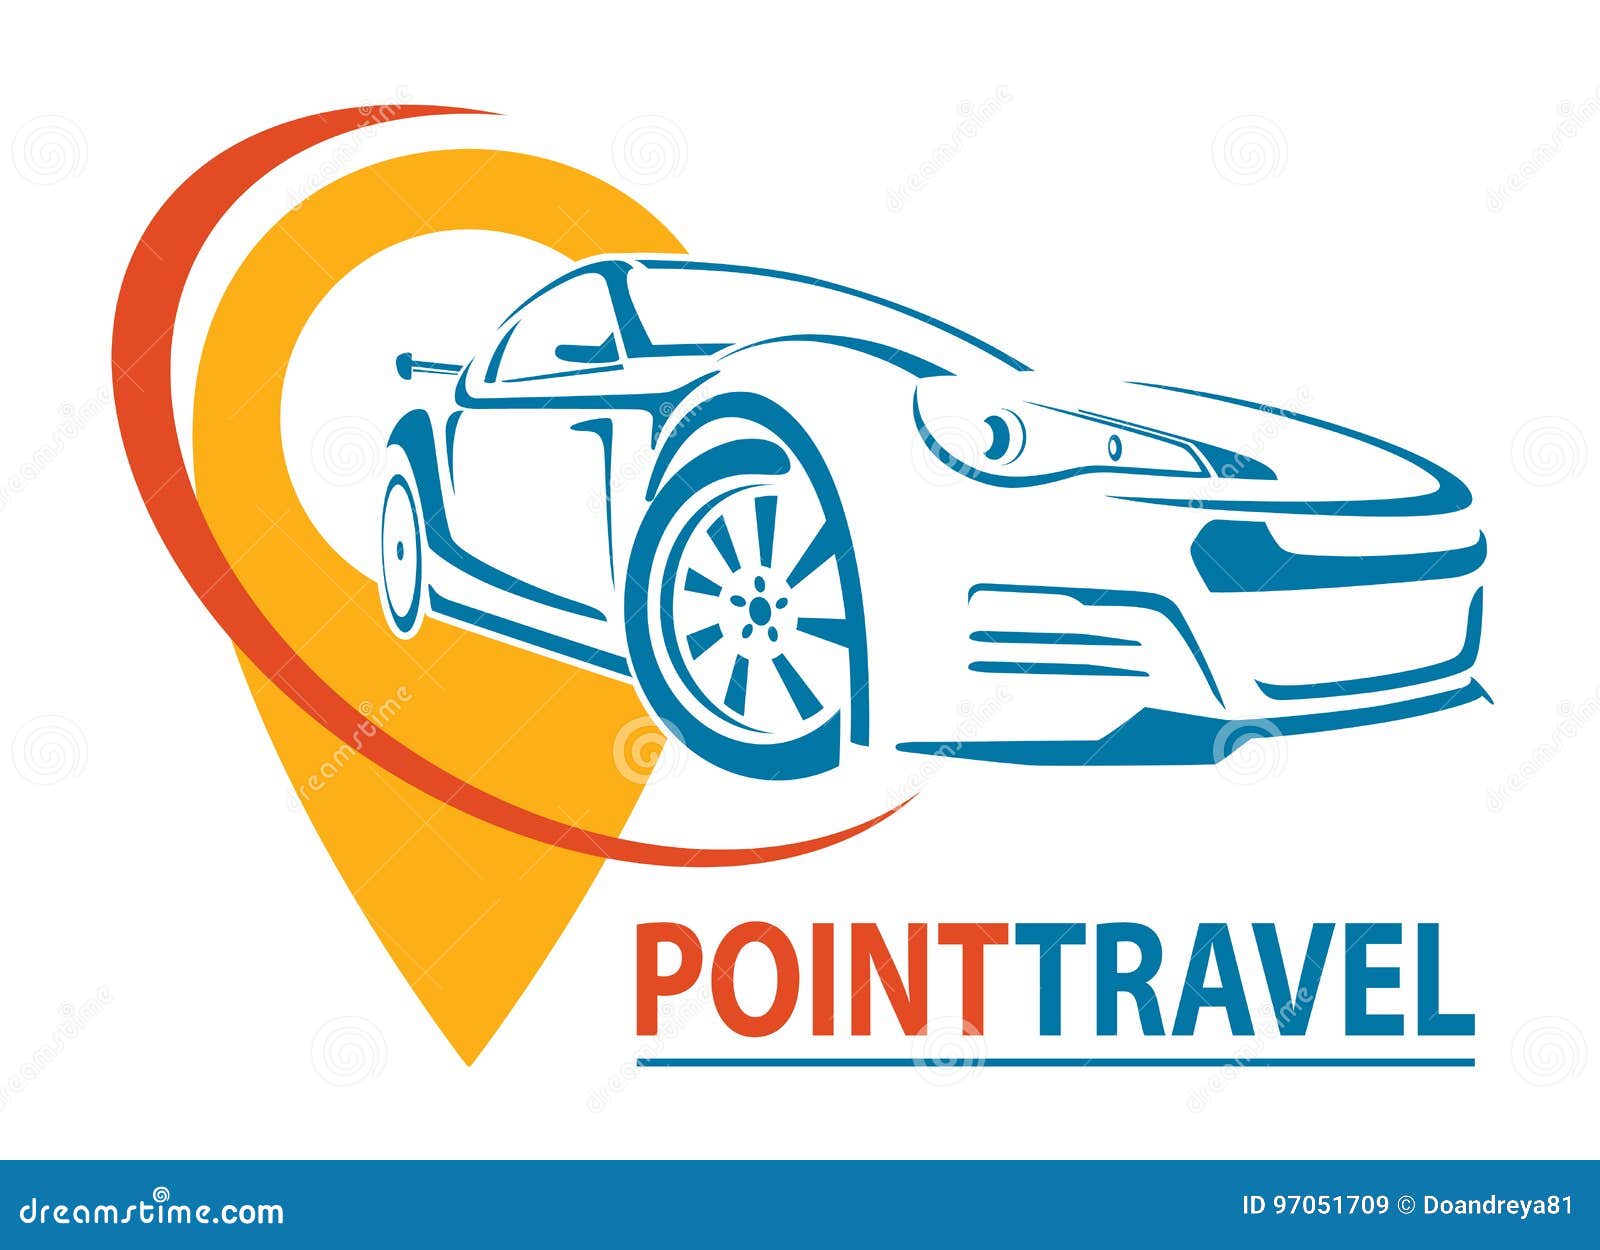 travel logo car